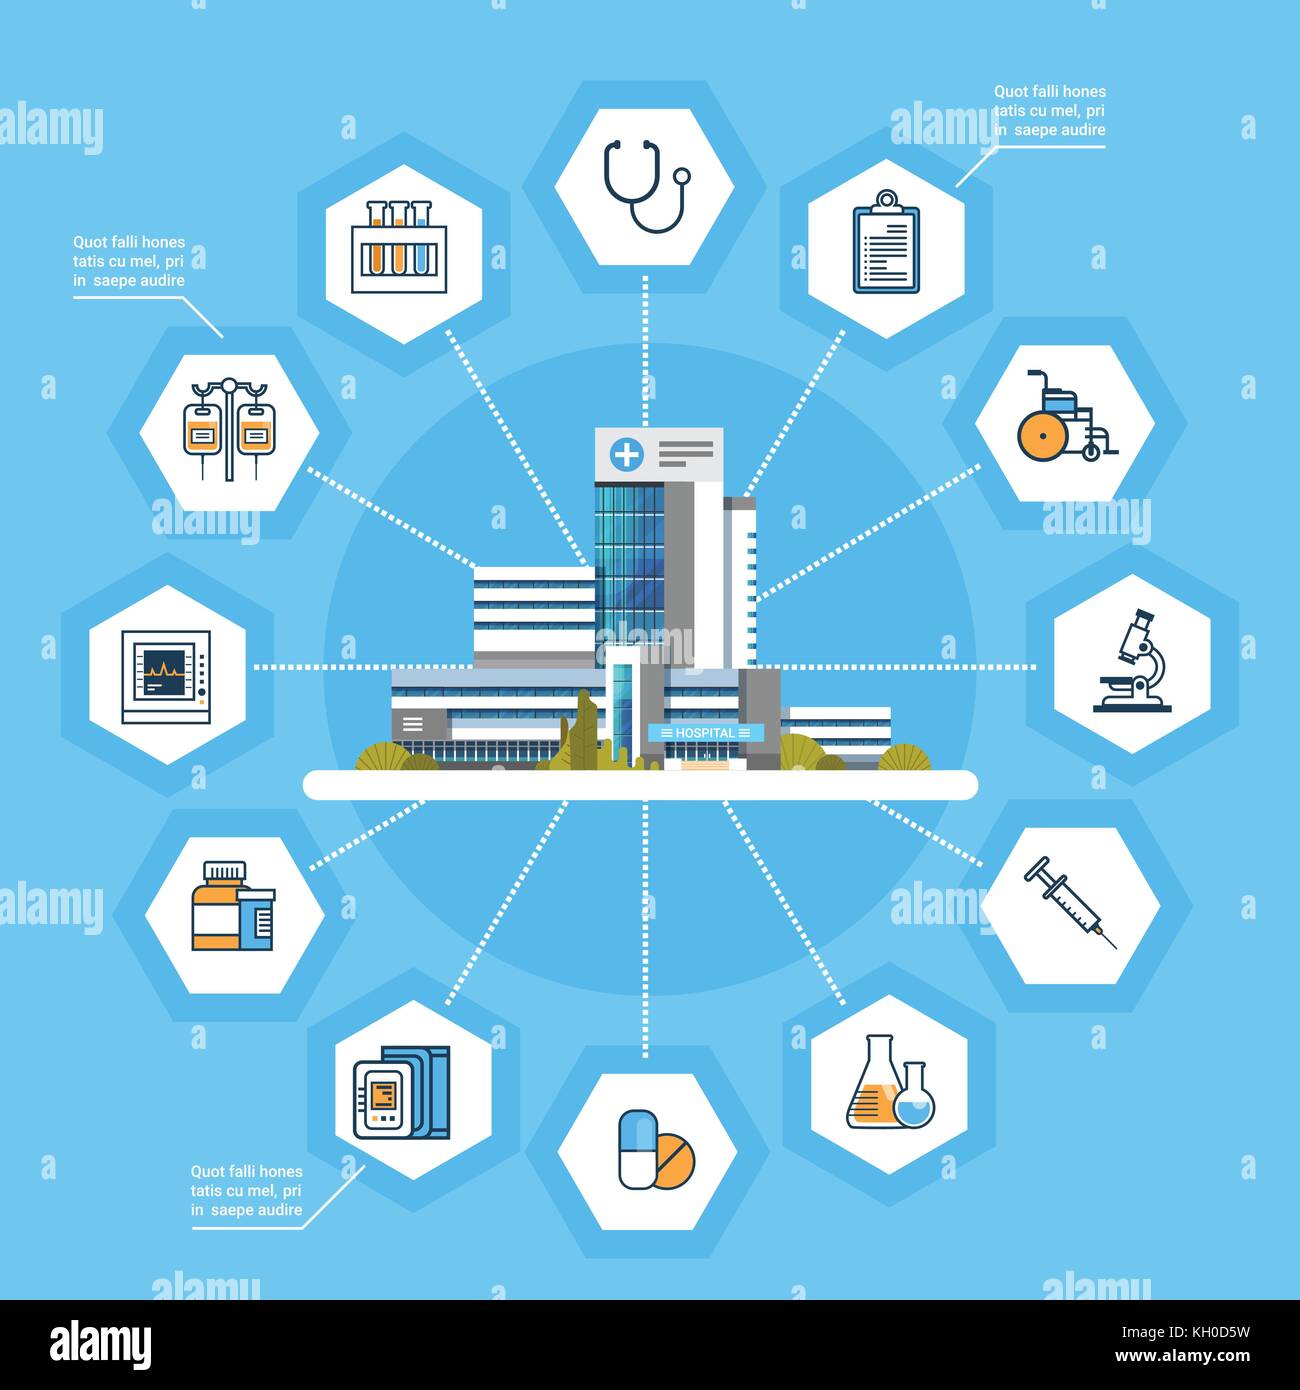 Krankenhaus Application Interface online medizinische Behandlung Ikonen der modernen Medizin Konzept Stock Vektor